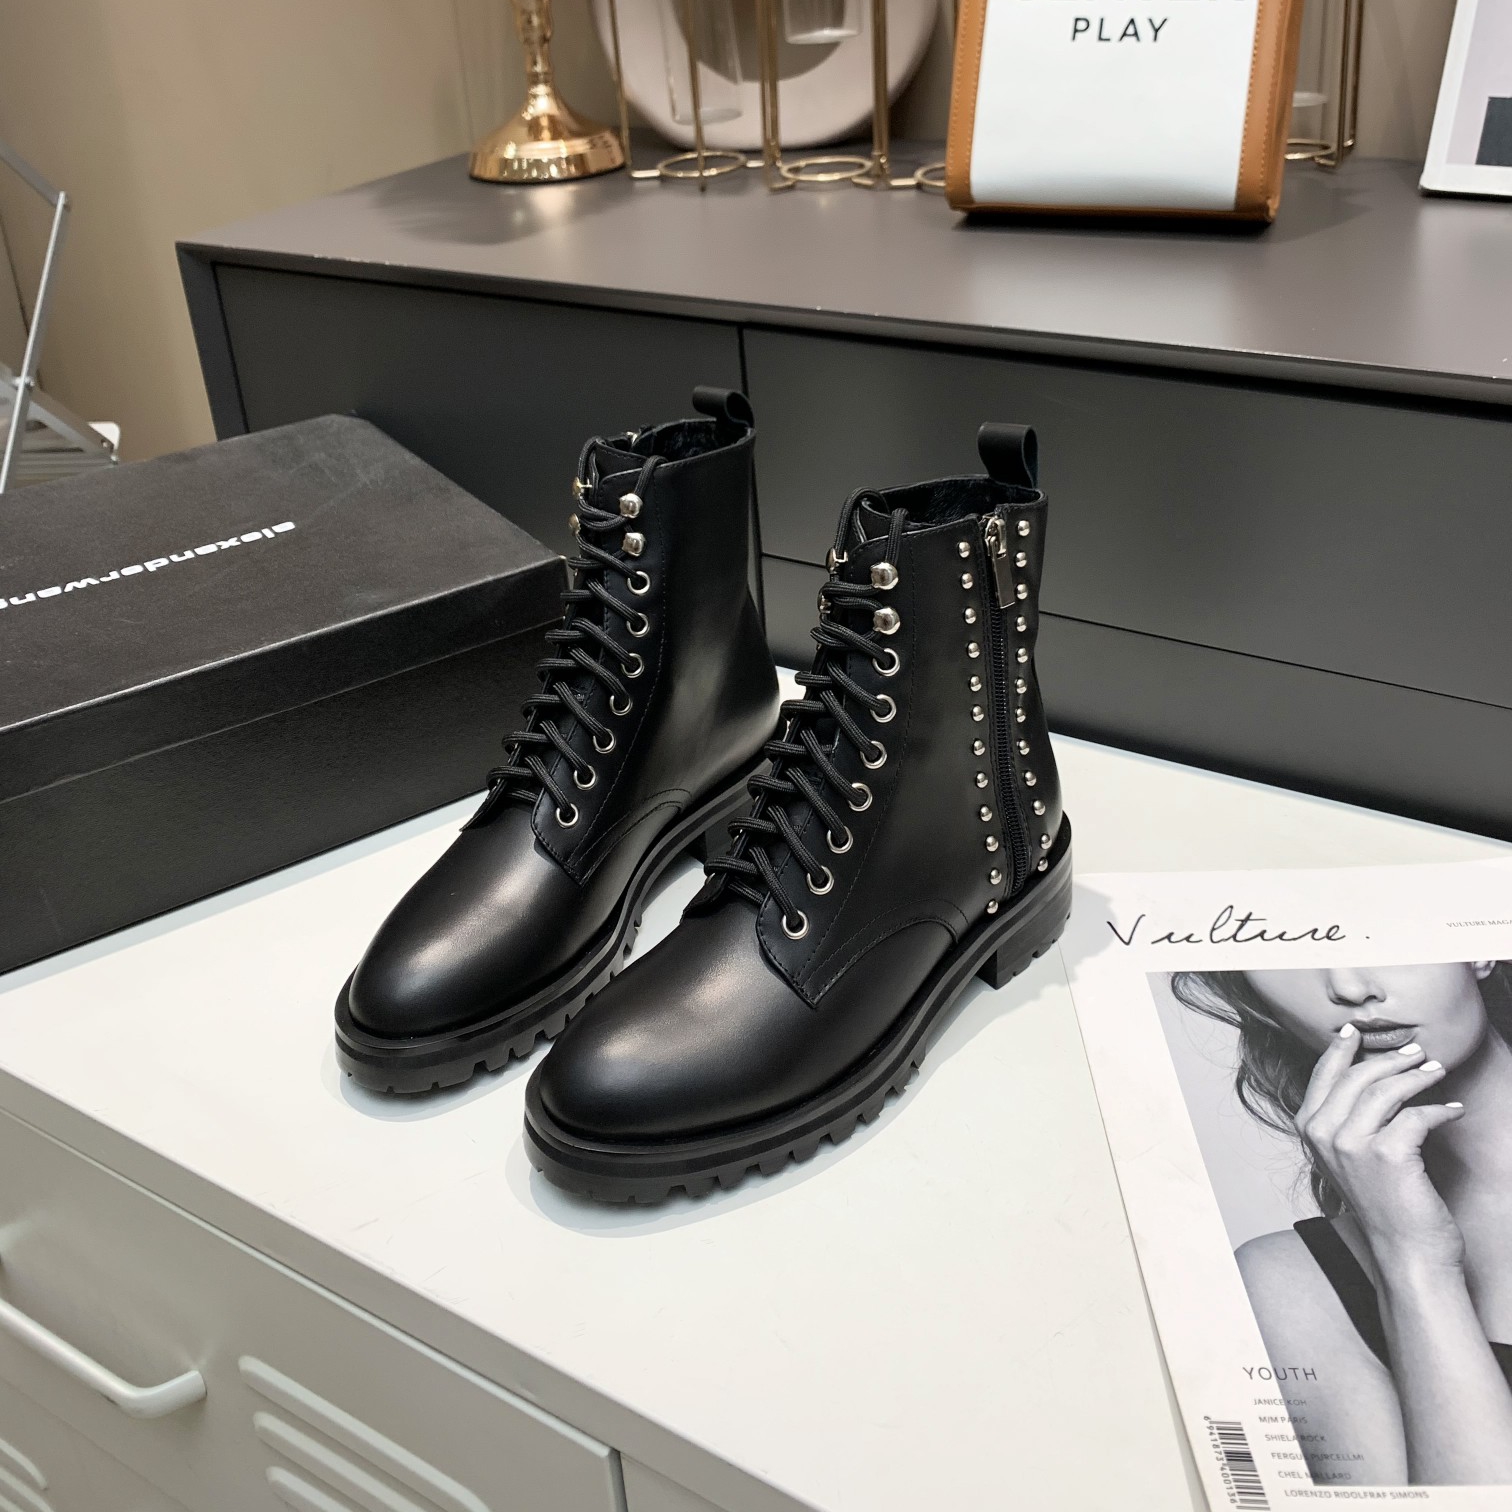 الیگزینڈر وانگ فیشن لگژری مشہور برانڈ میلان فیشن ویک خواتین کے برانڈ کے جوتے اور جعلی ڈیزائنرز کے جوتے بھی اعلیٰ معیار کی برانڈ ہیلس